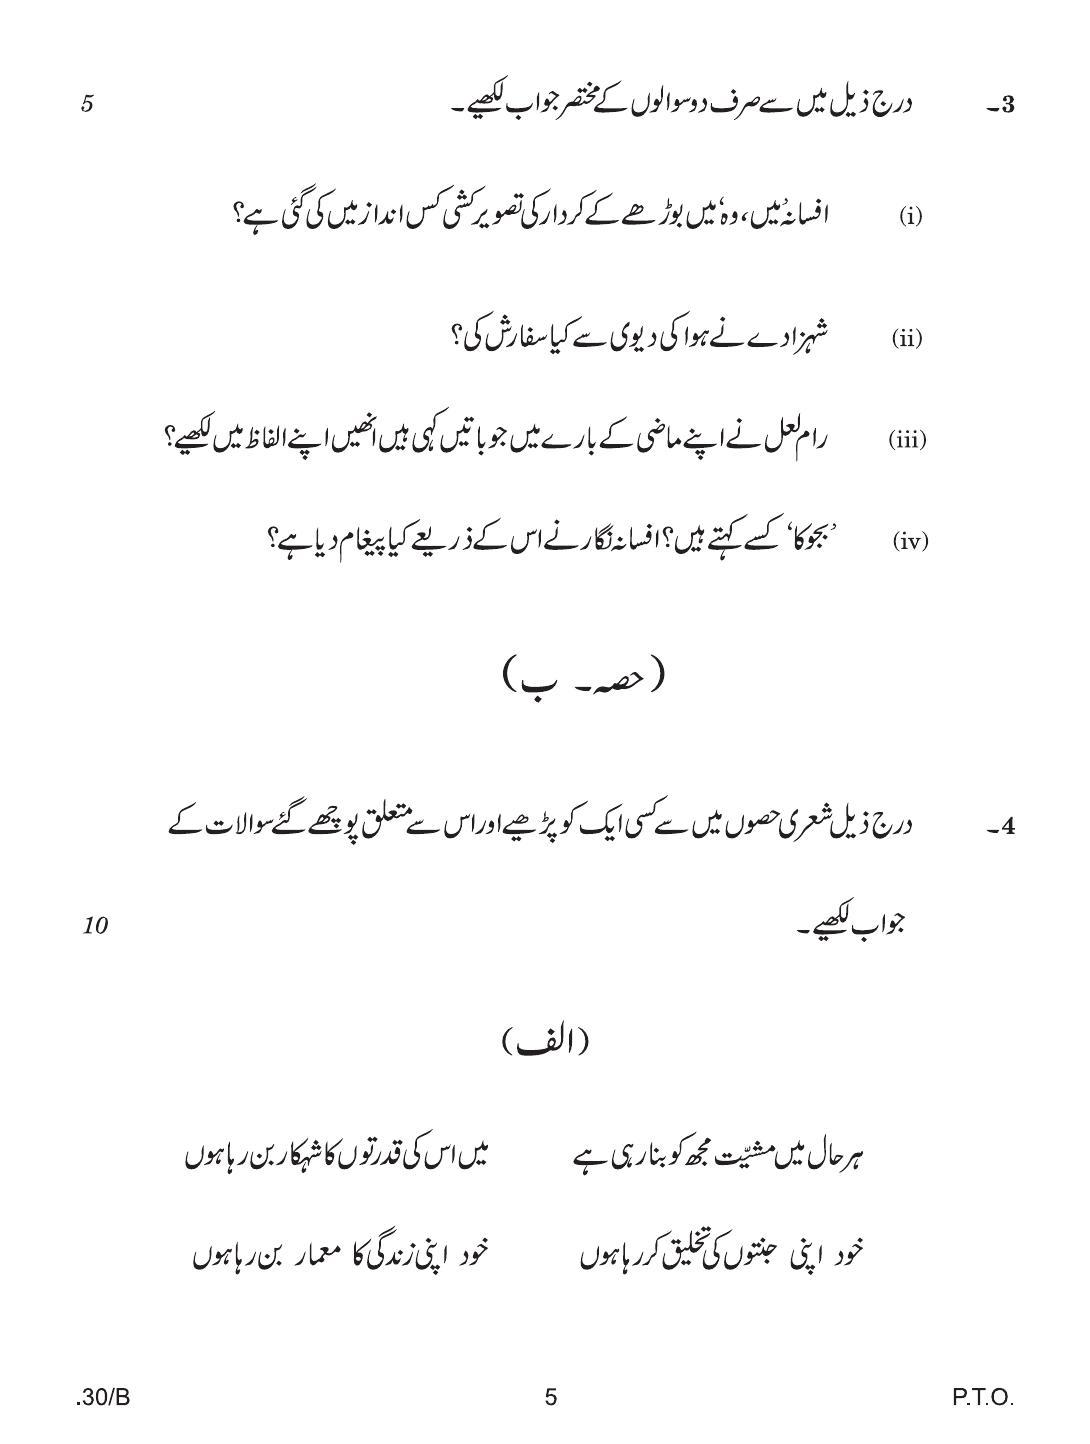 CBSE Class 12 Urdu Elective 2020 Compartment Question Paper - Page 5